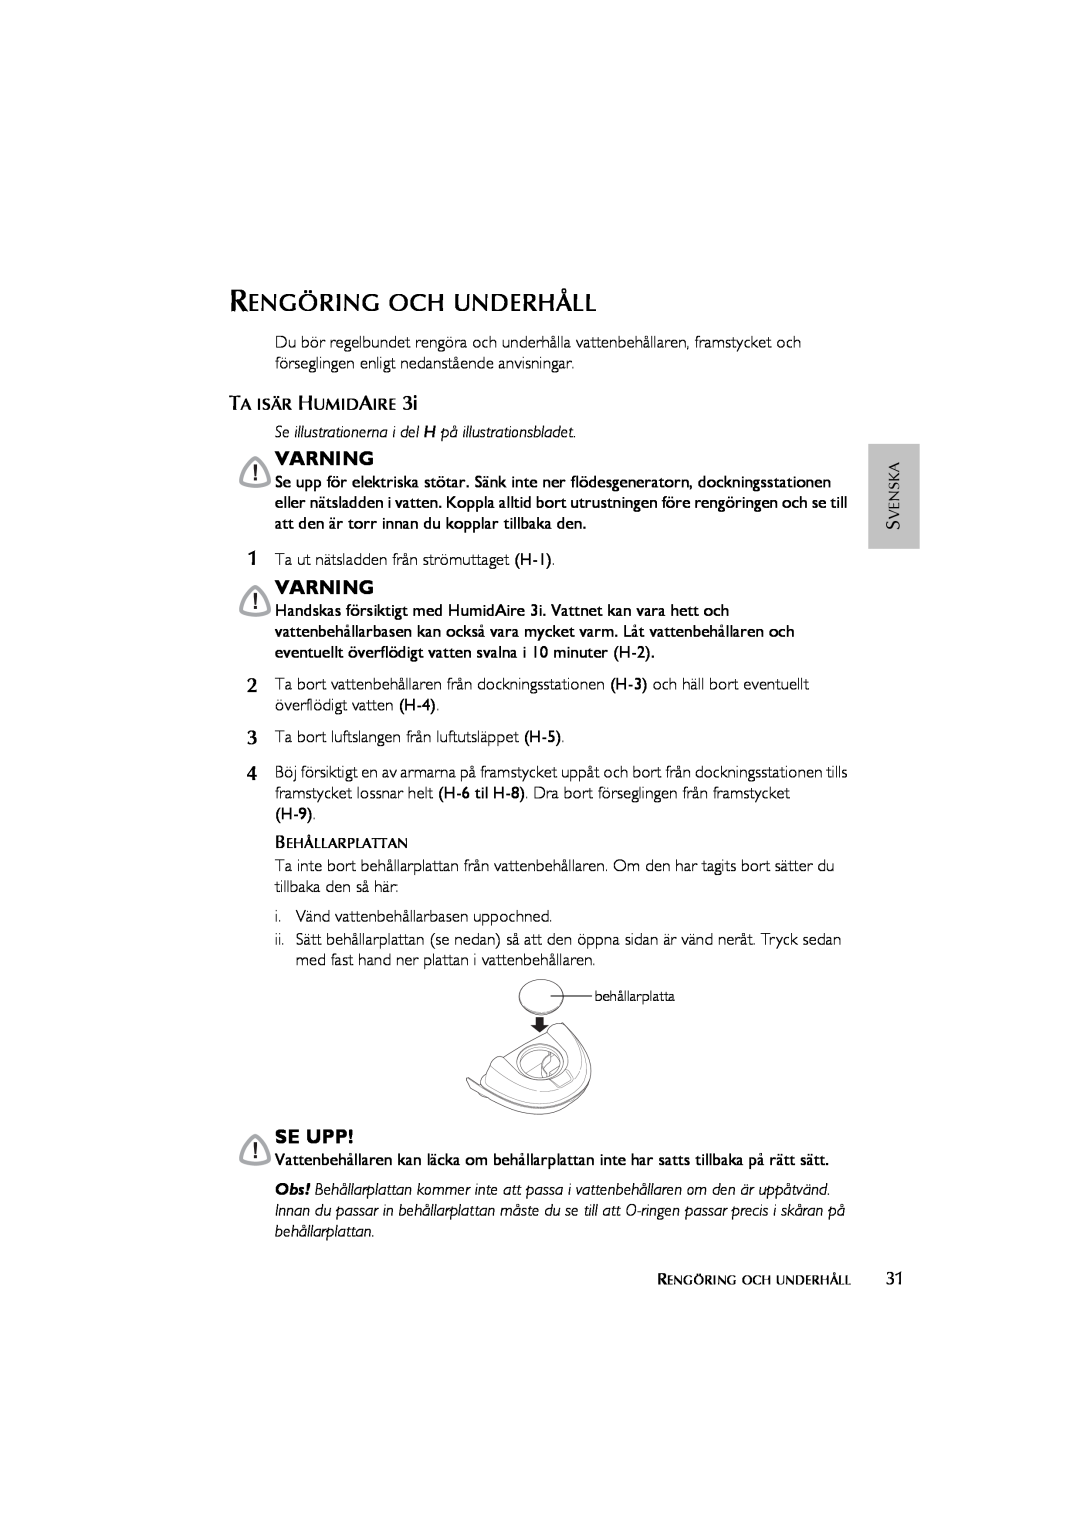 ResMed Humidifier user manual Rengöring Och Underhåll, Varning, Se Upp 